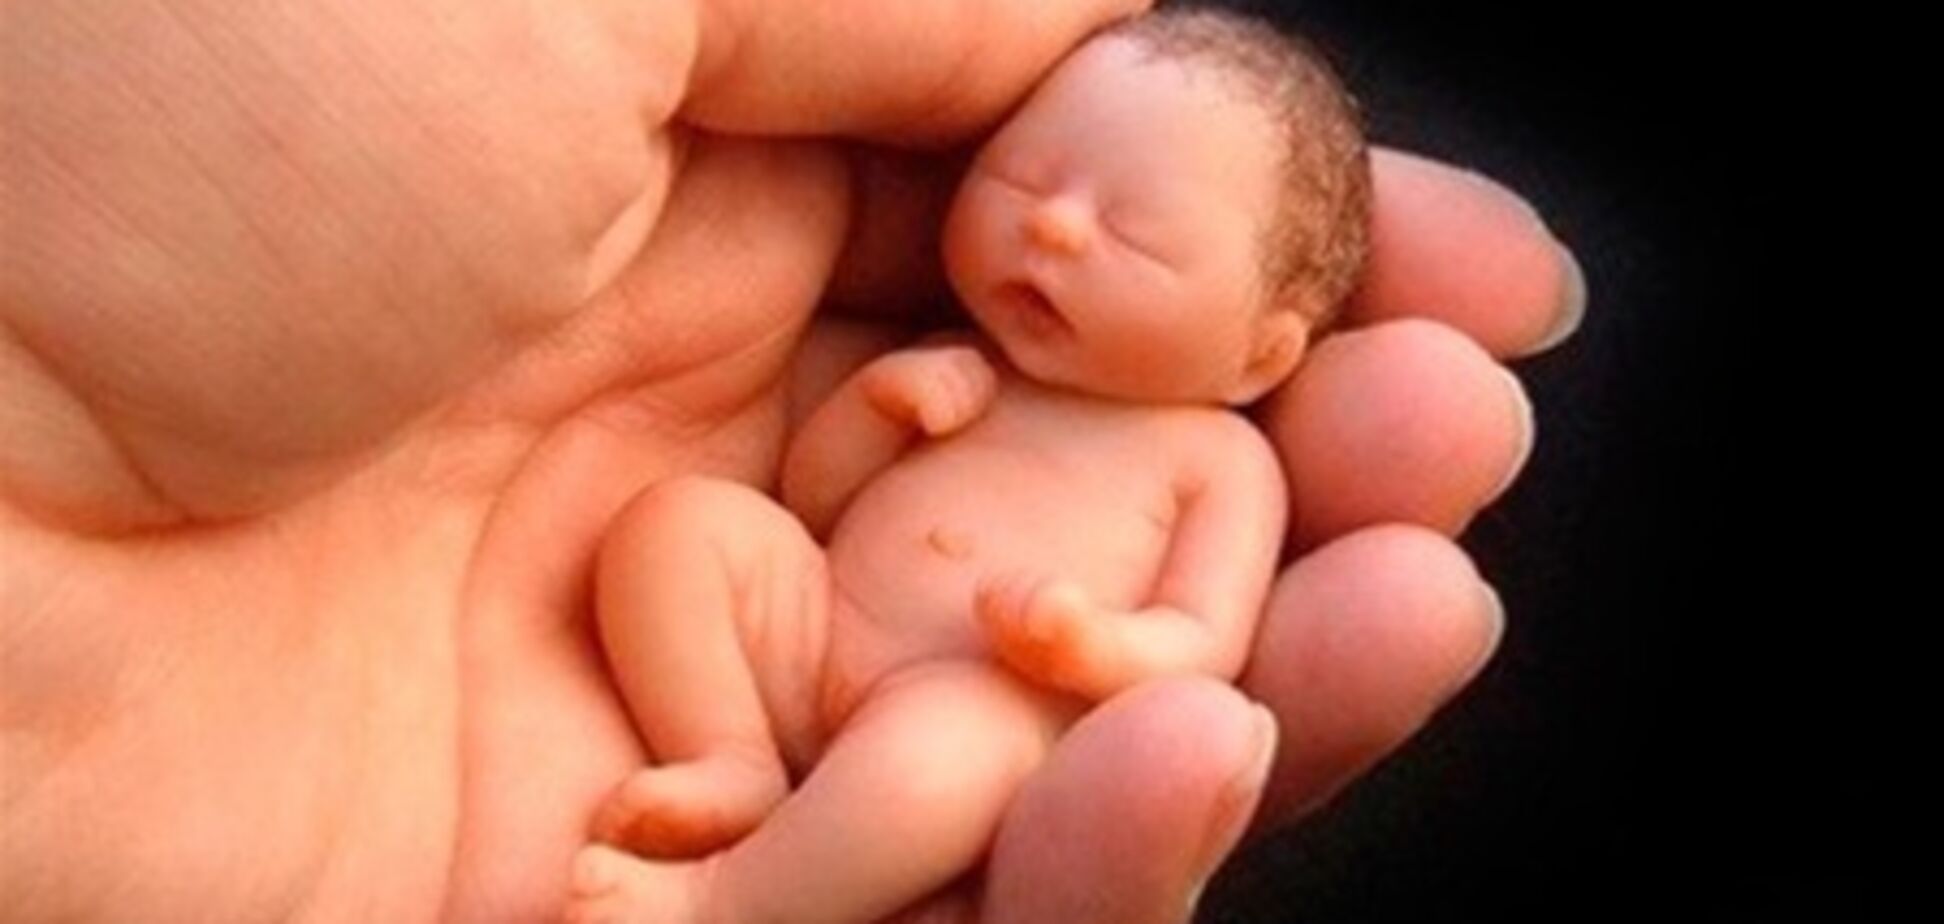 Профильный комитет Рады отклонил запрет абортов